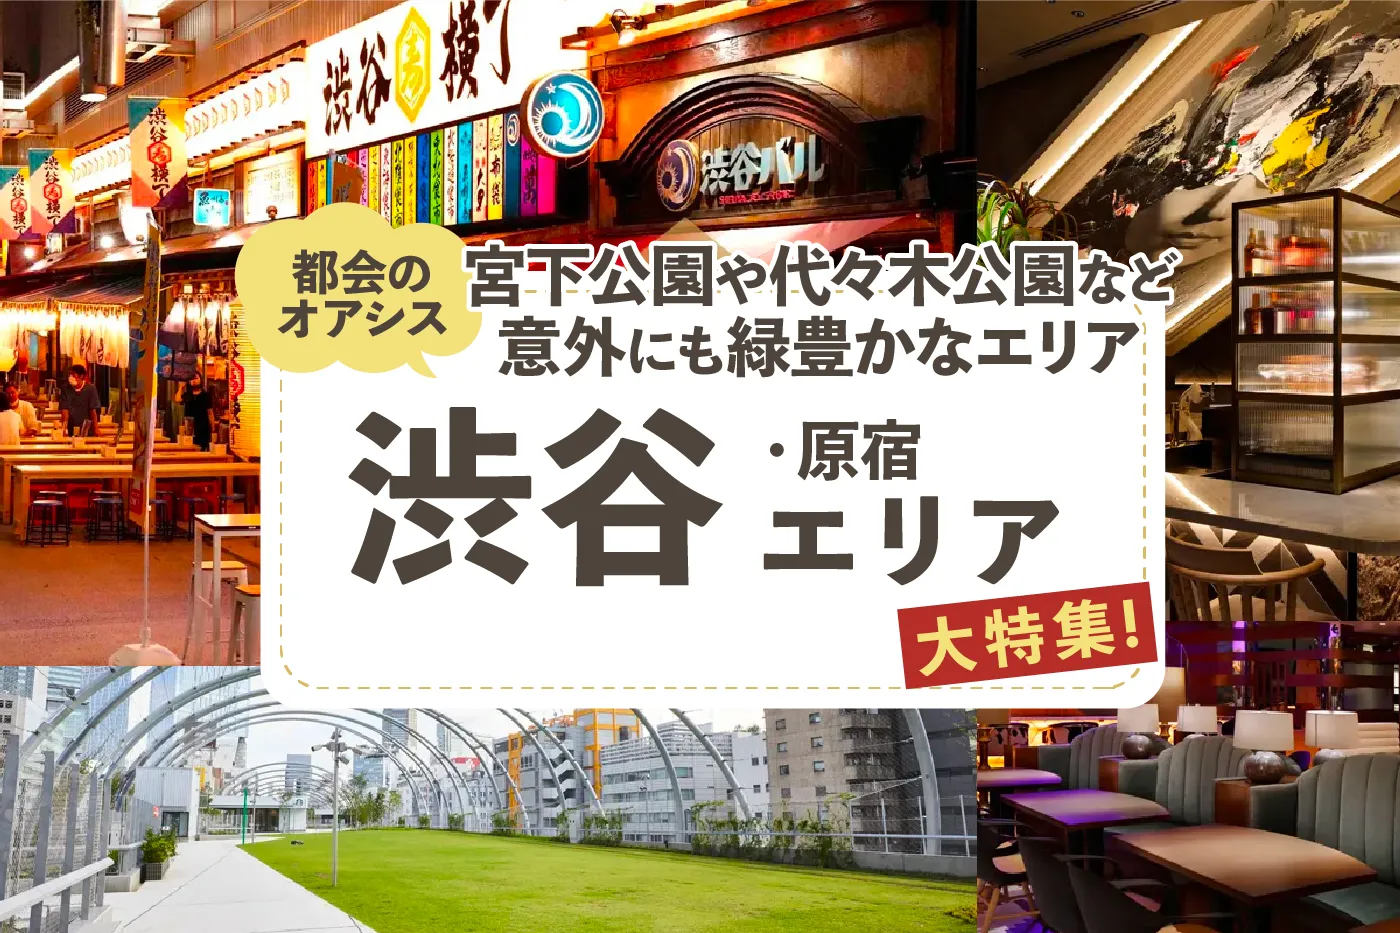 【渋谷・原宿エリア】わんこと行ける#渋谷周辺のおすすめショップと施設をご紹介